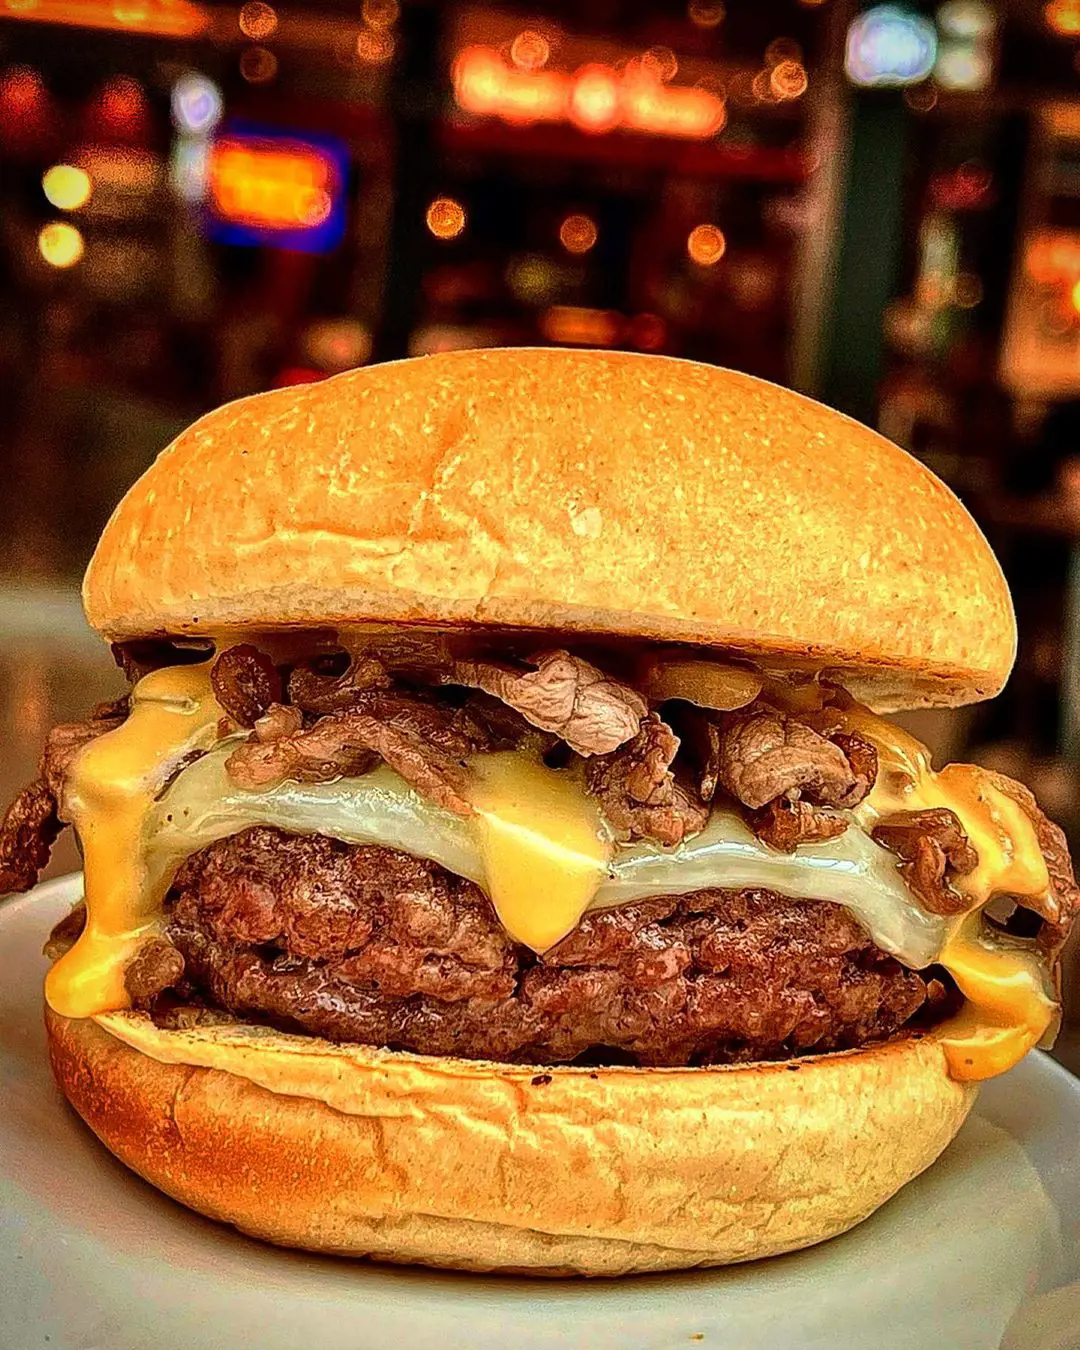 “𝘗𝘩𝘪𝘭𝘭𝘺 𝘗𝘩𝘪𝘭𝘭𝘺” Cheesesteak Cheeseburger